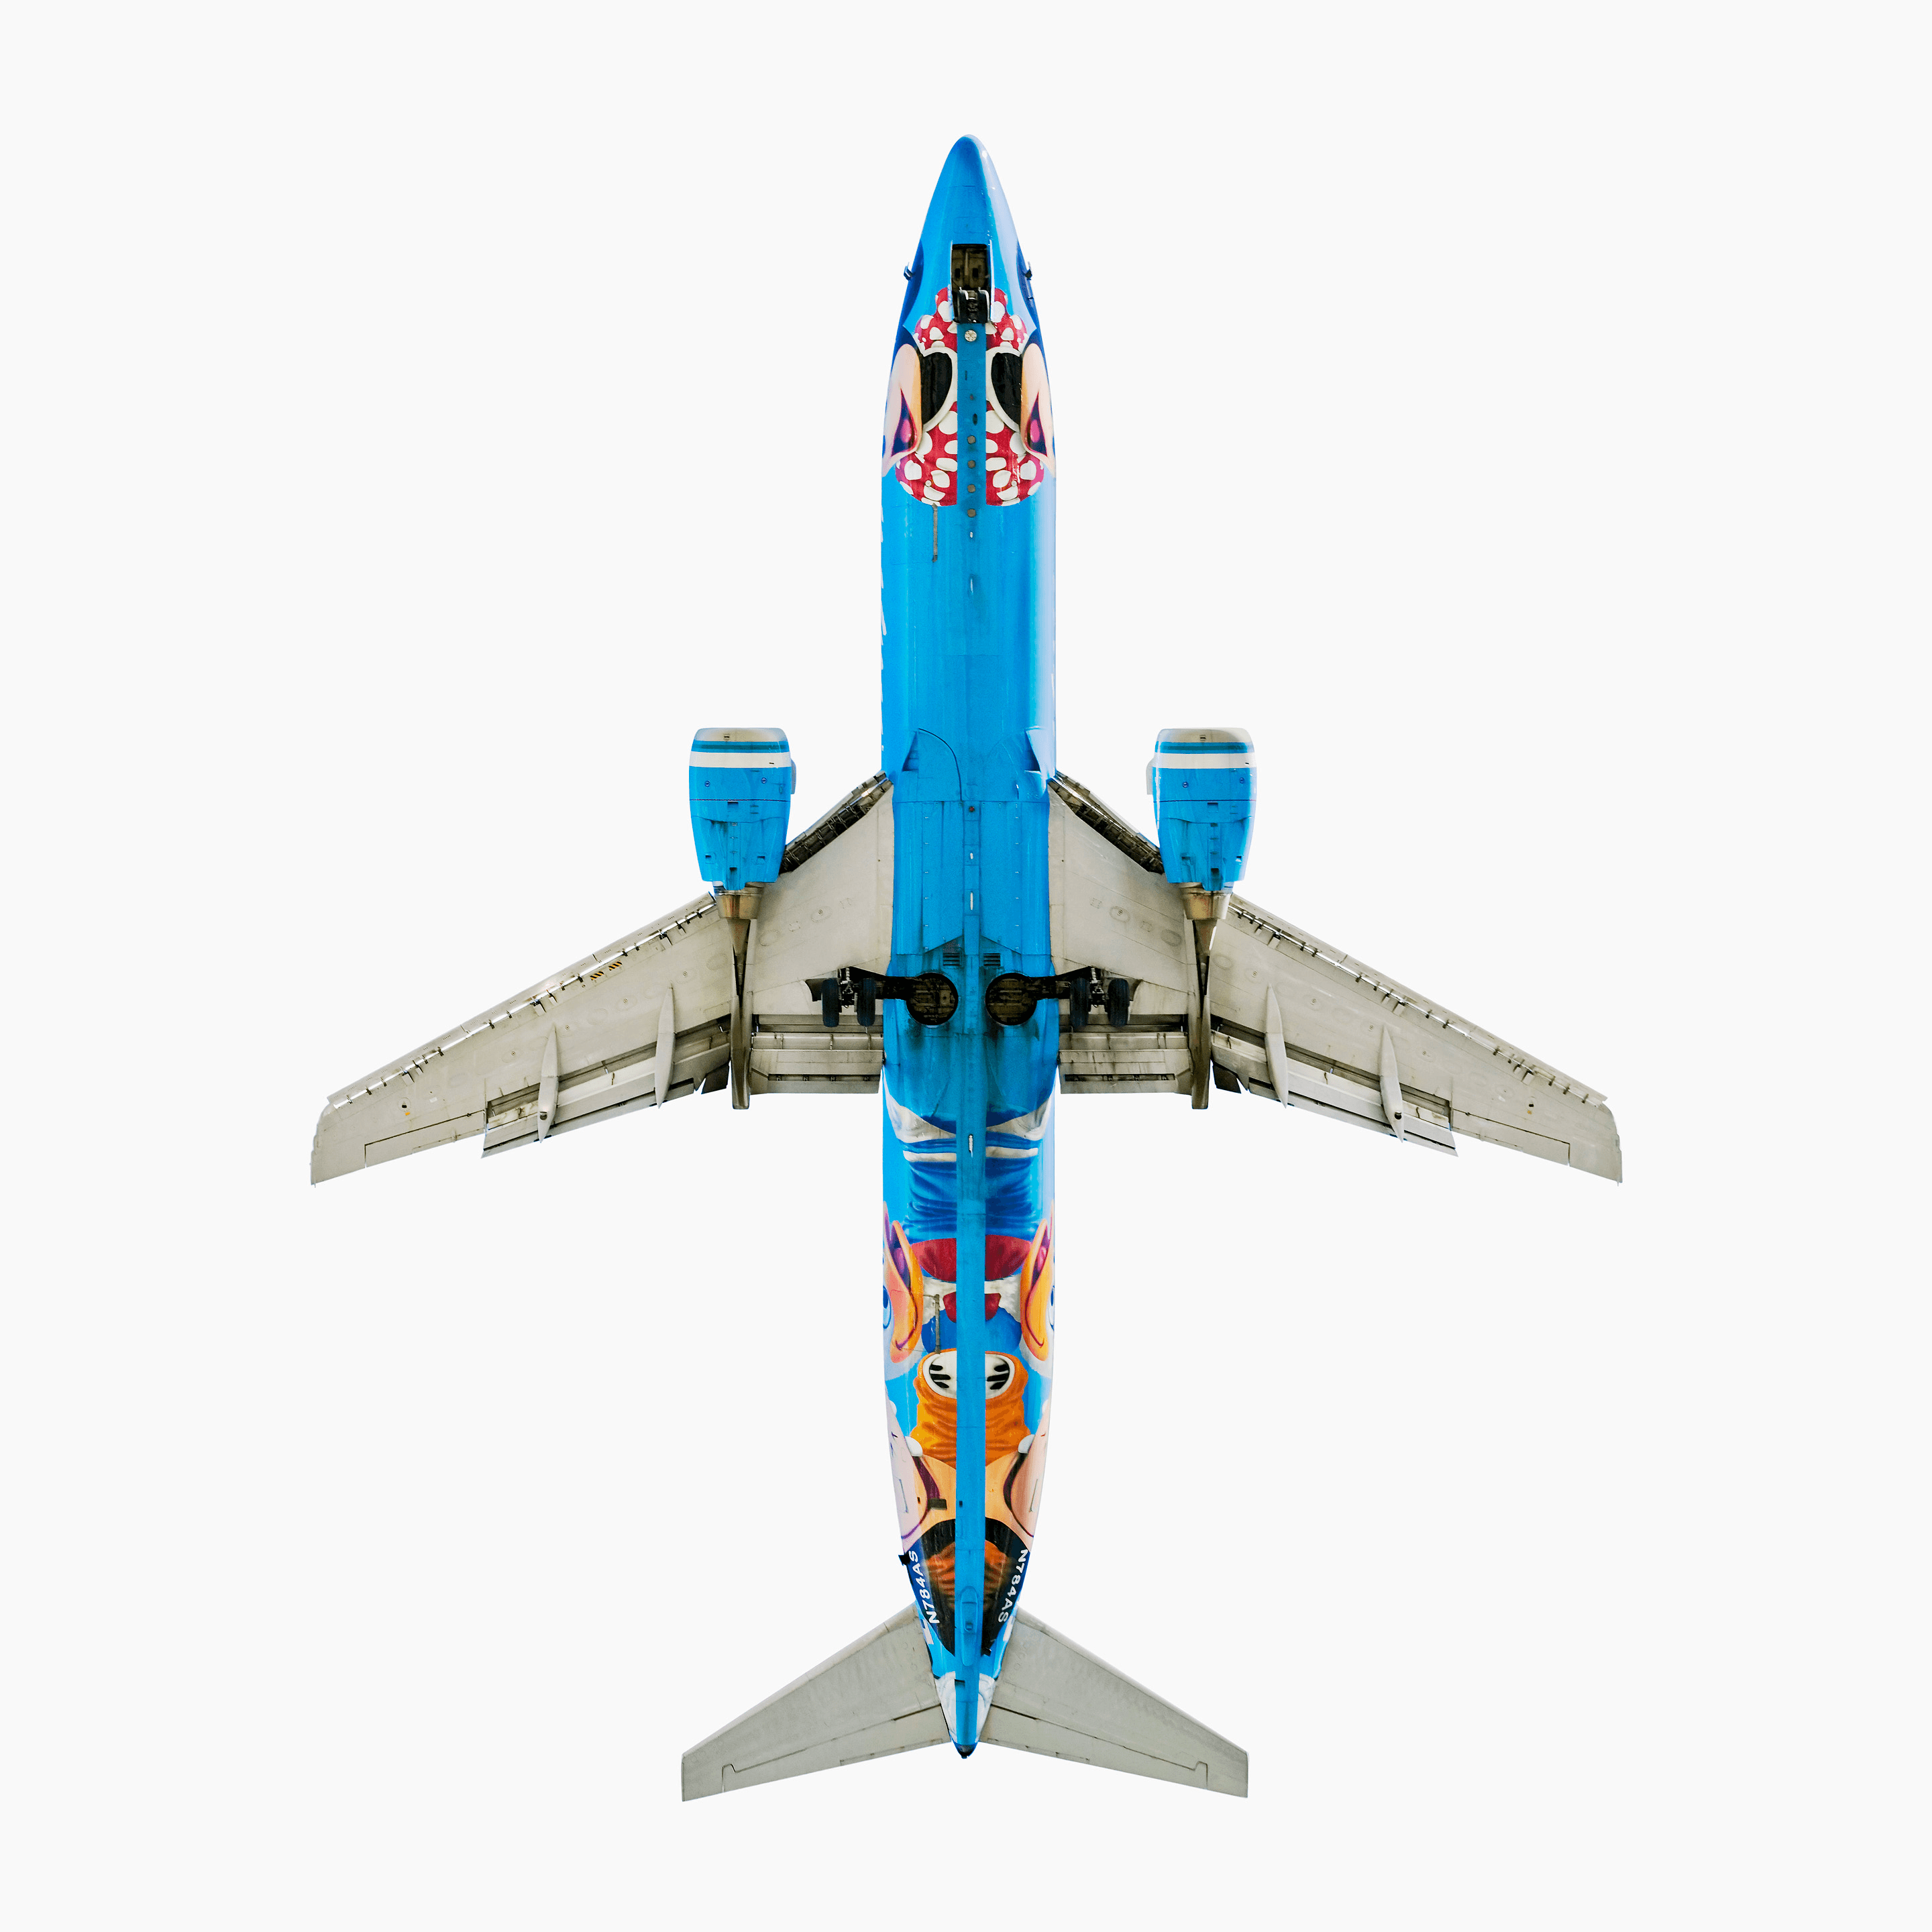 Alaska Airlines (Disneyland) Boeing 737-400